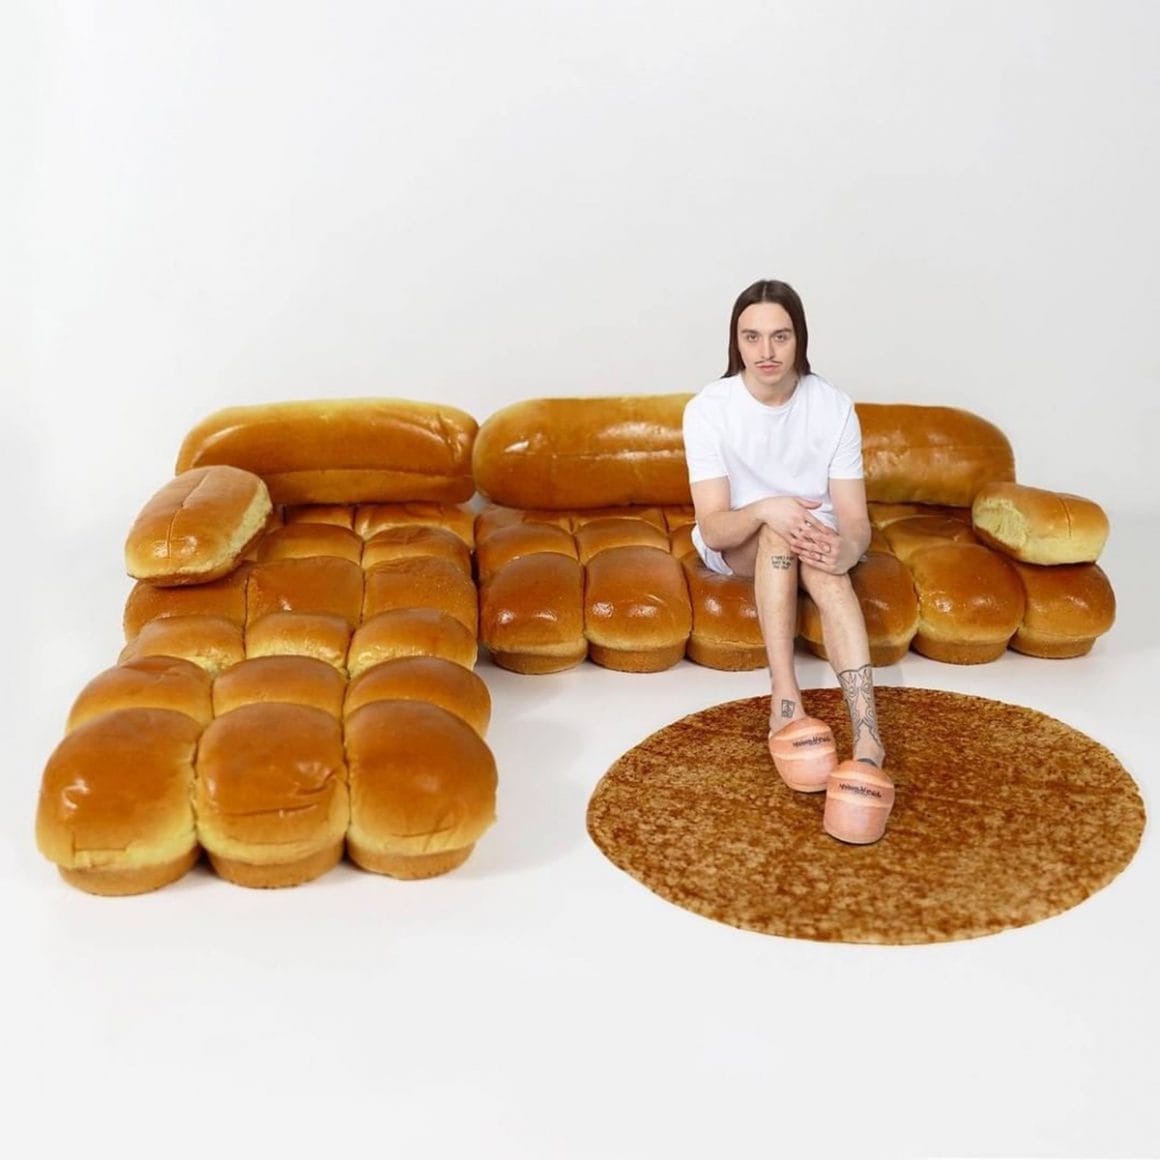 IKEA imagine un canapé en pain brioché